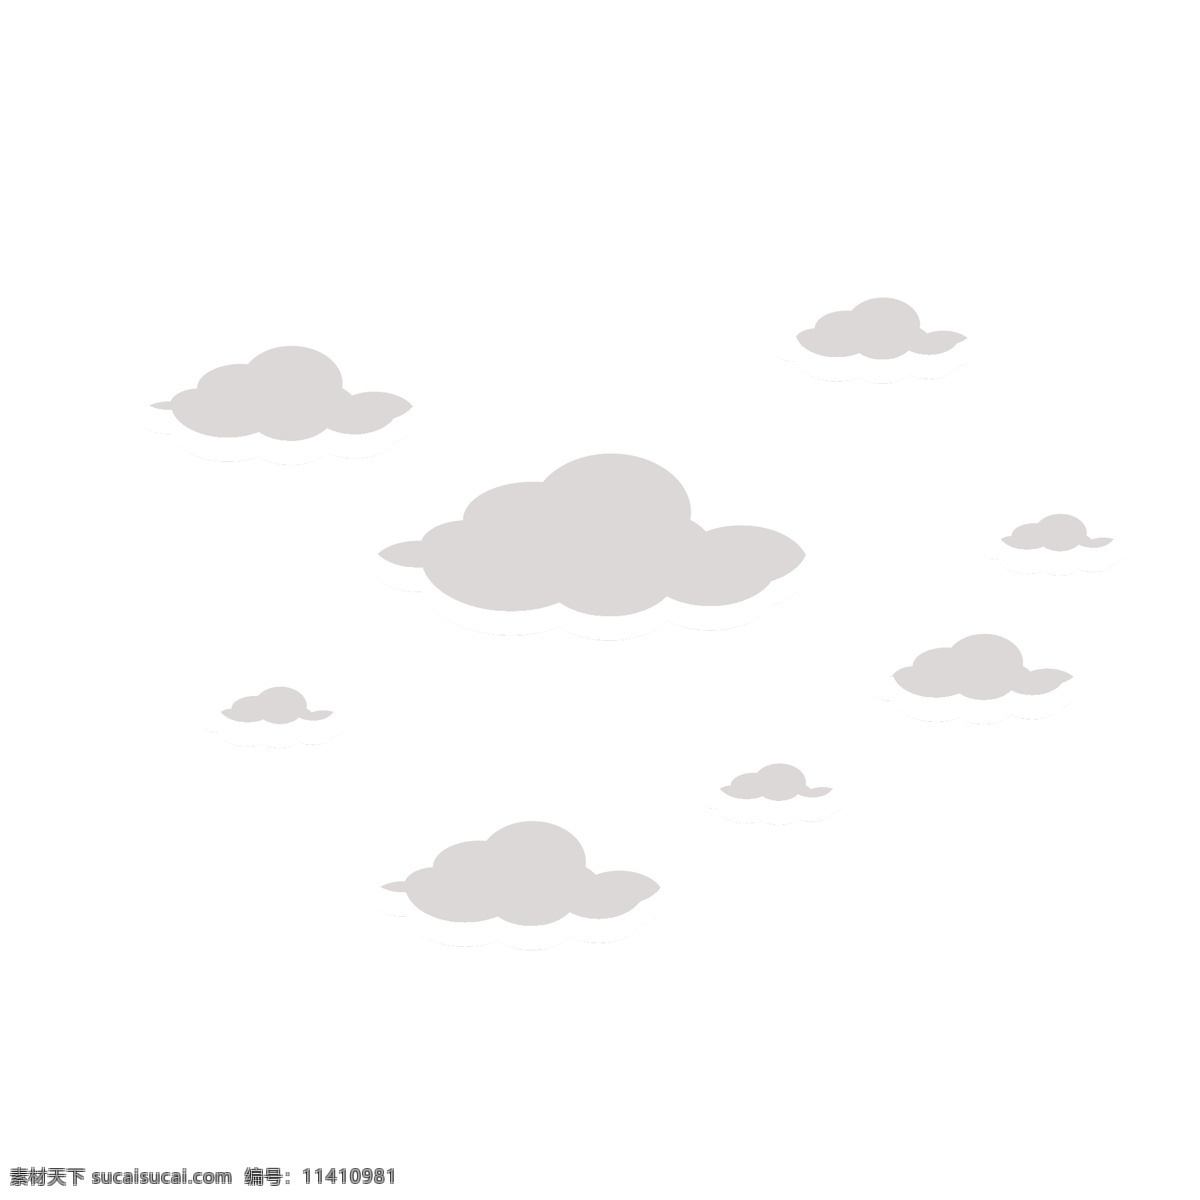 手绘 灰色 天空 乌云 简约 创意 时尚 下雨 天气 云朵 古典云纹 云纹 卡通 图案 中式 png祥云